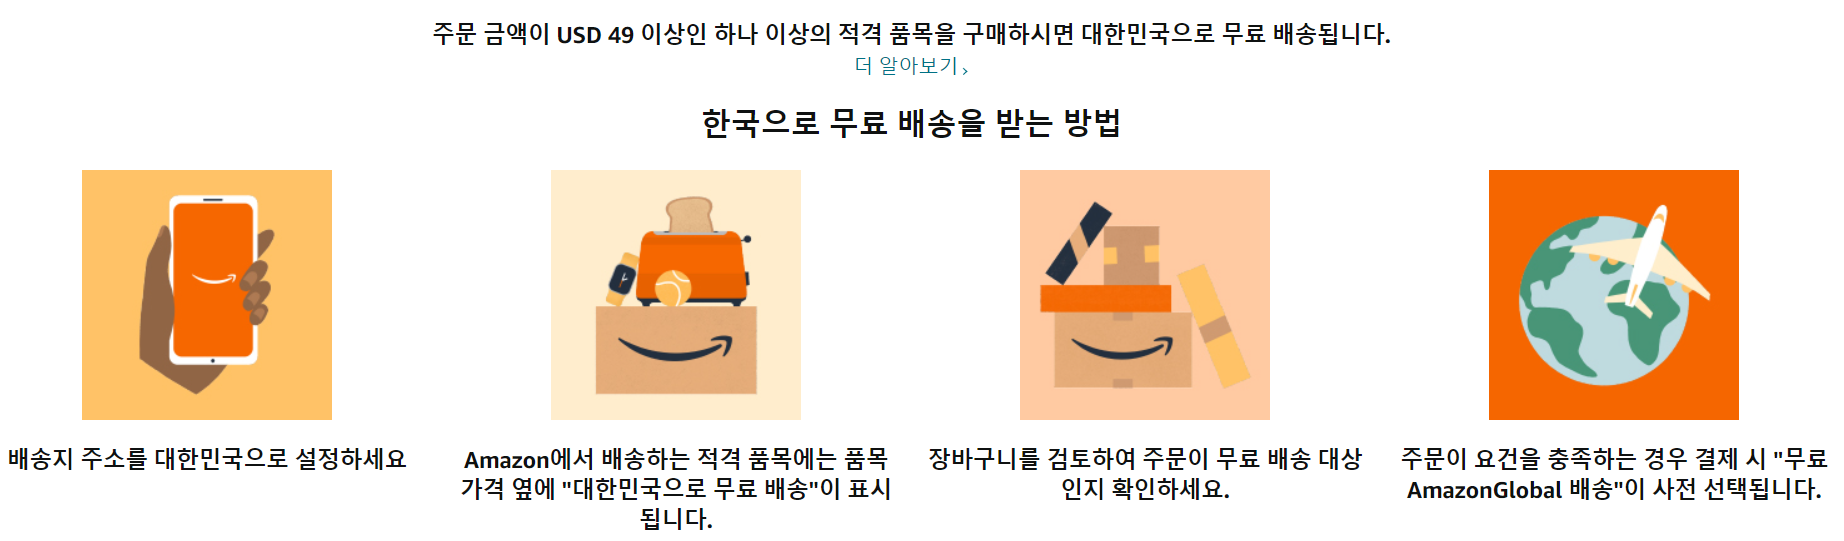 아마존 홈페이지 한국 무료배송 프로모션 화면